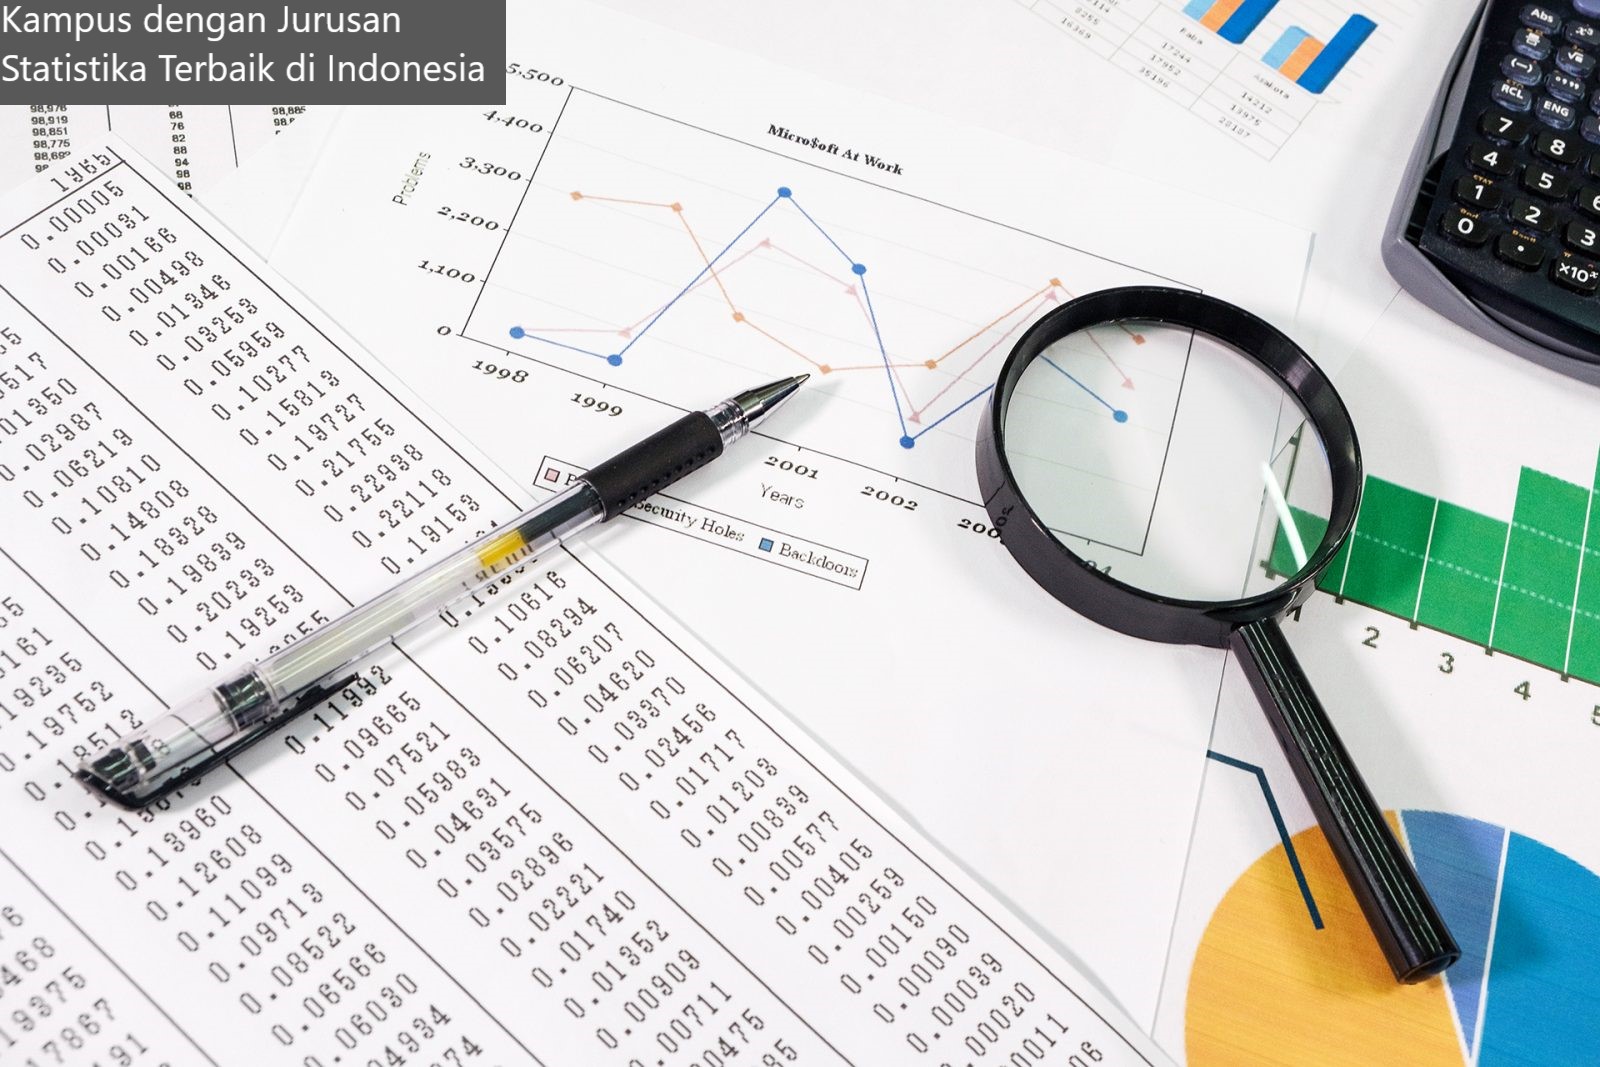 6 Referensi Kampus dengan Jurusan Statistika Terbaik di Indonesia